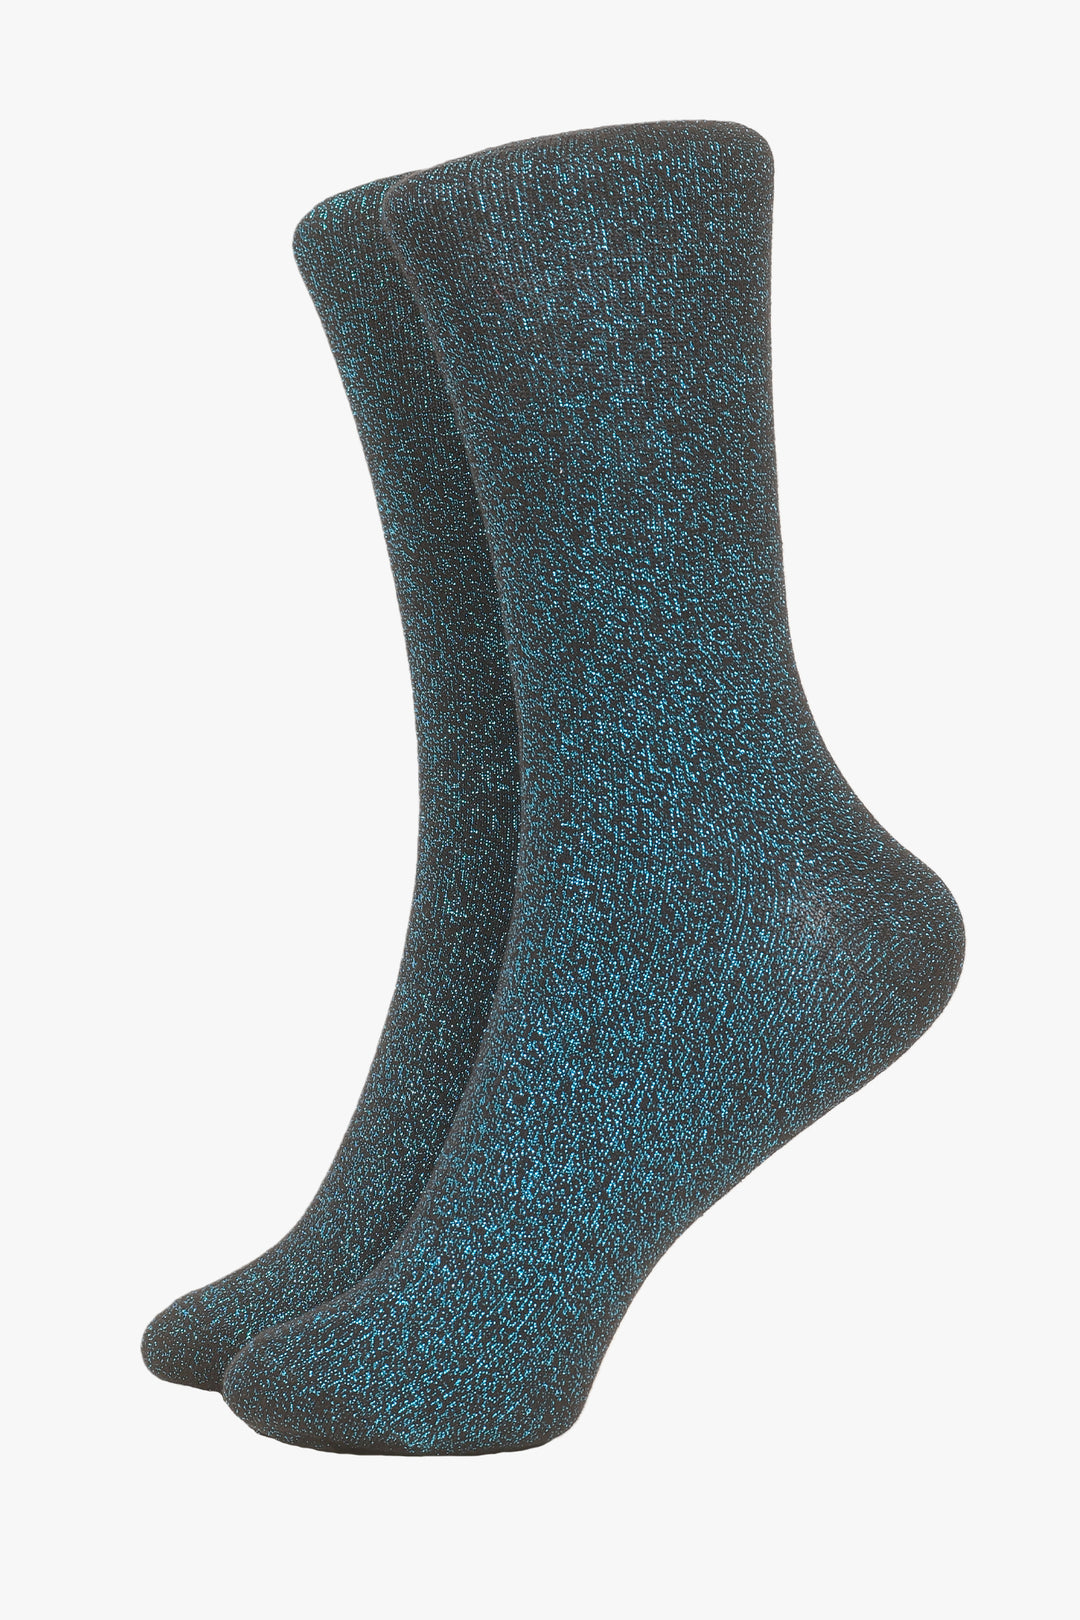 Black Turquoise All Over Glitter Socks